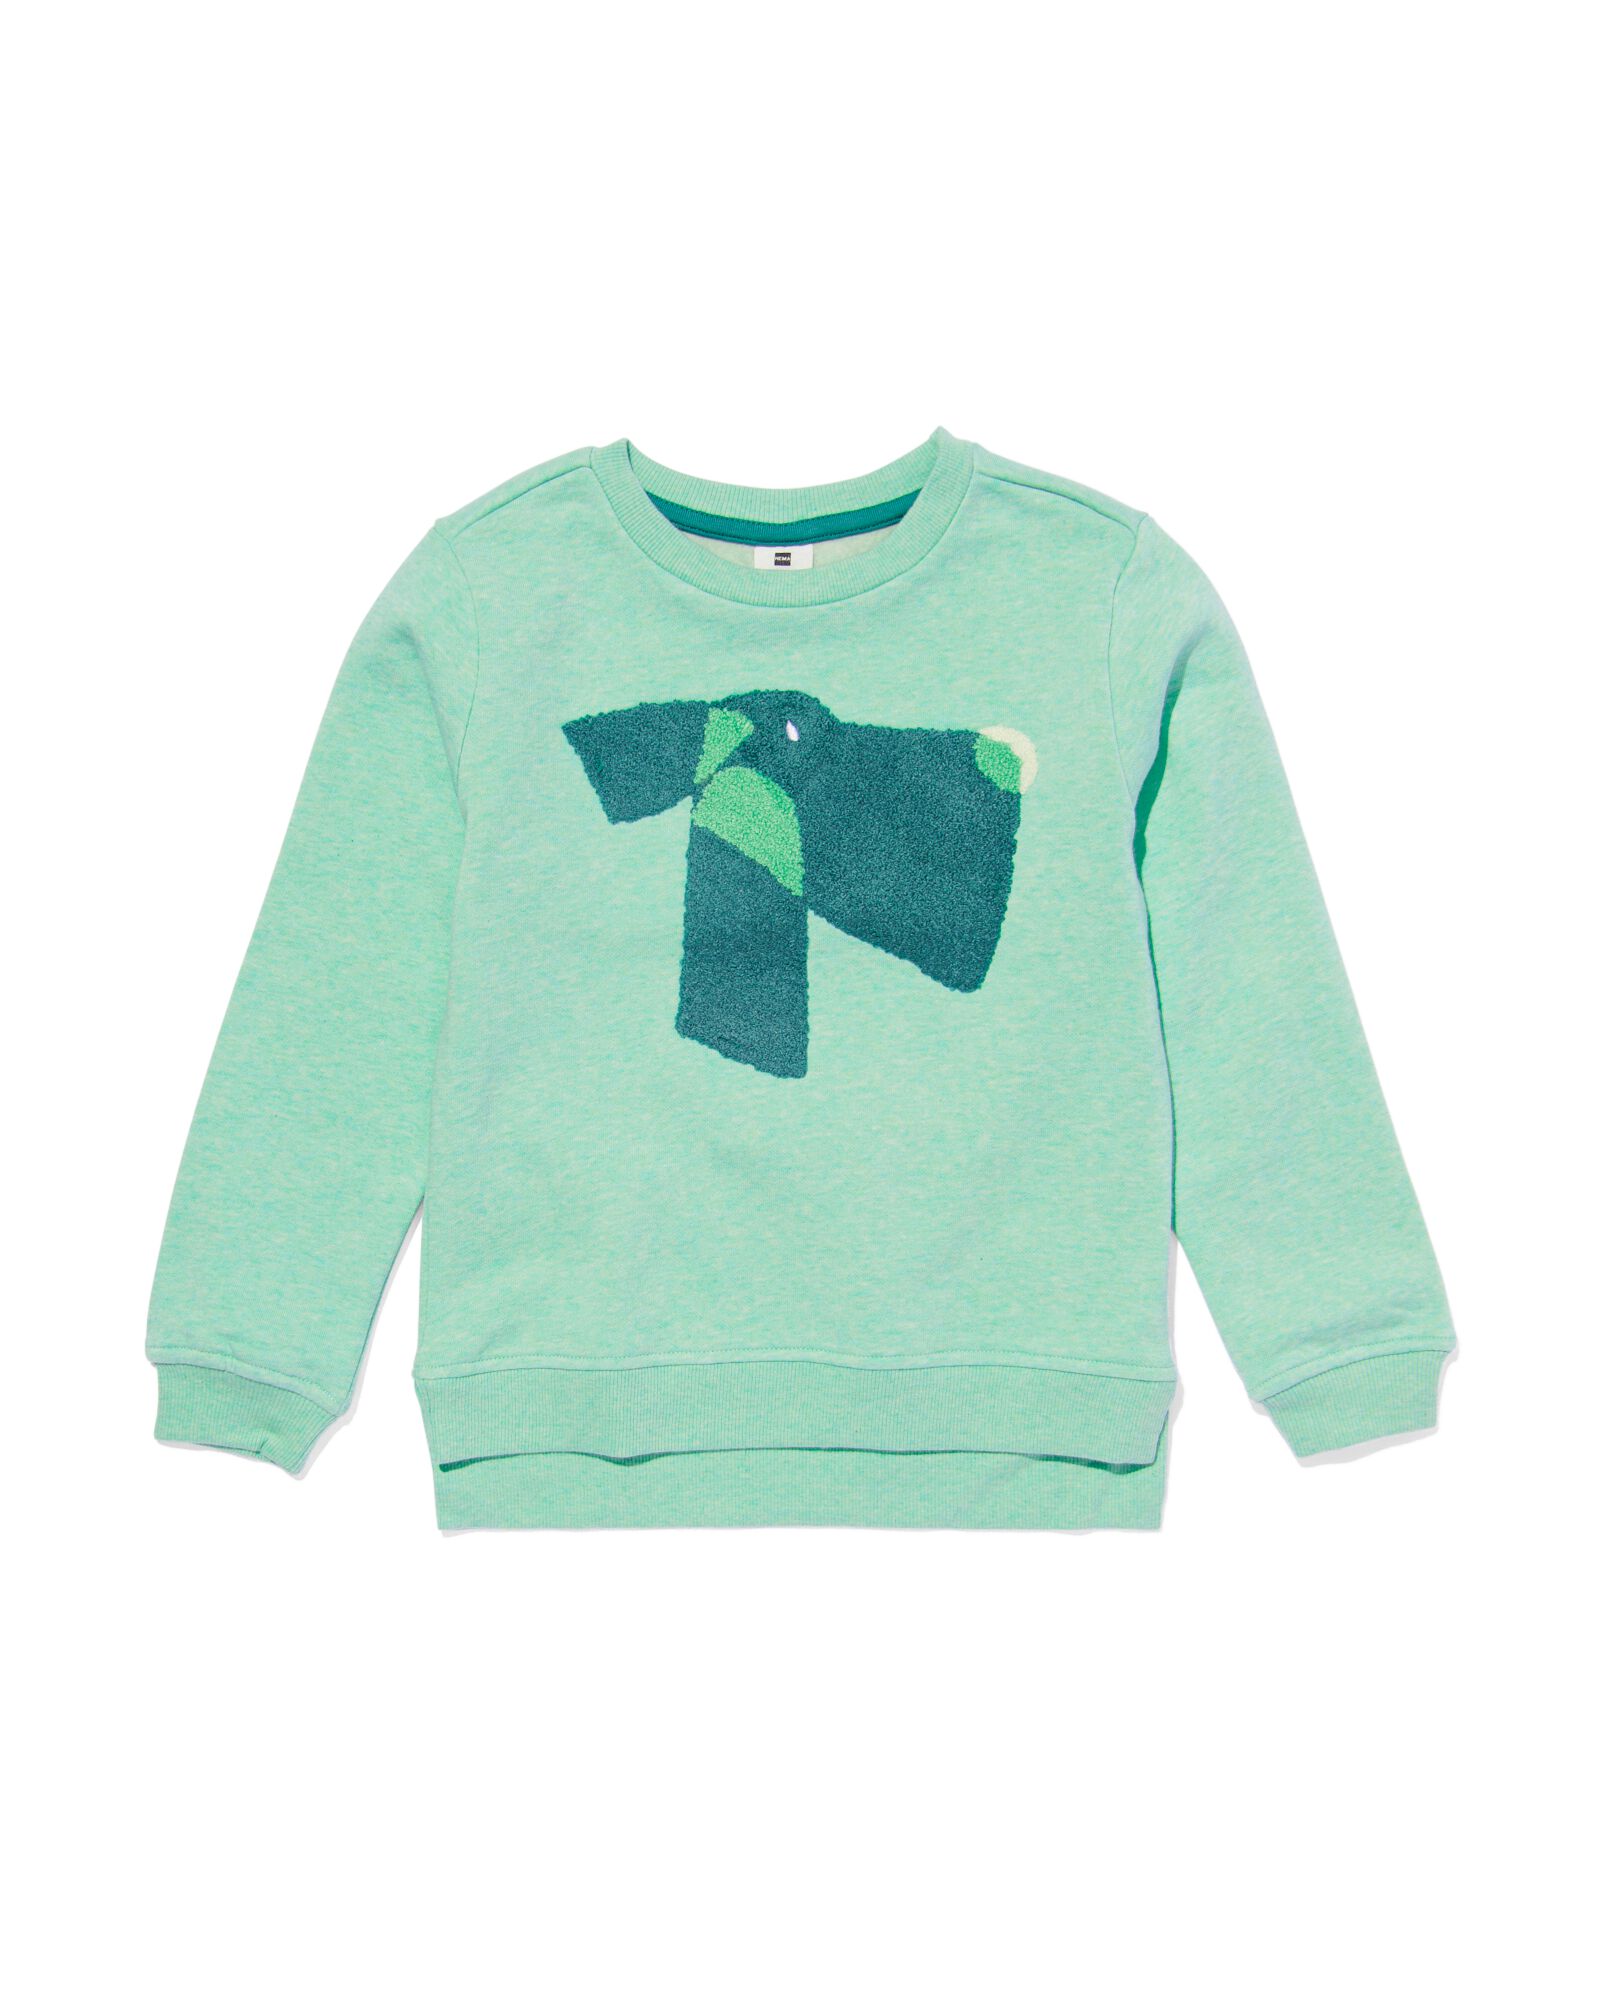 kindersweater met badstof hond groen groen - 30778523GREEN - HEMA